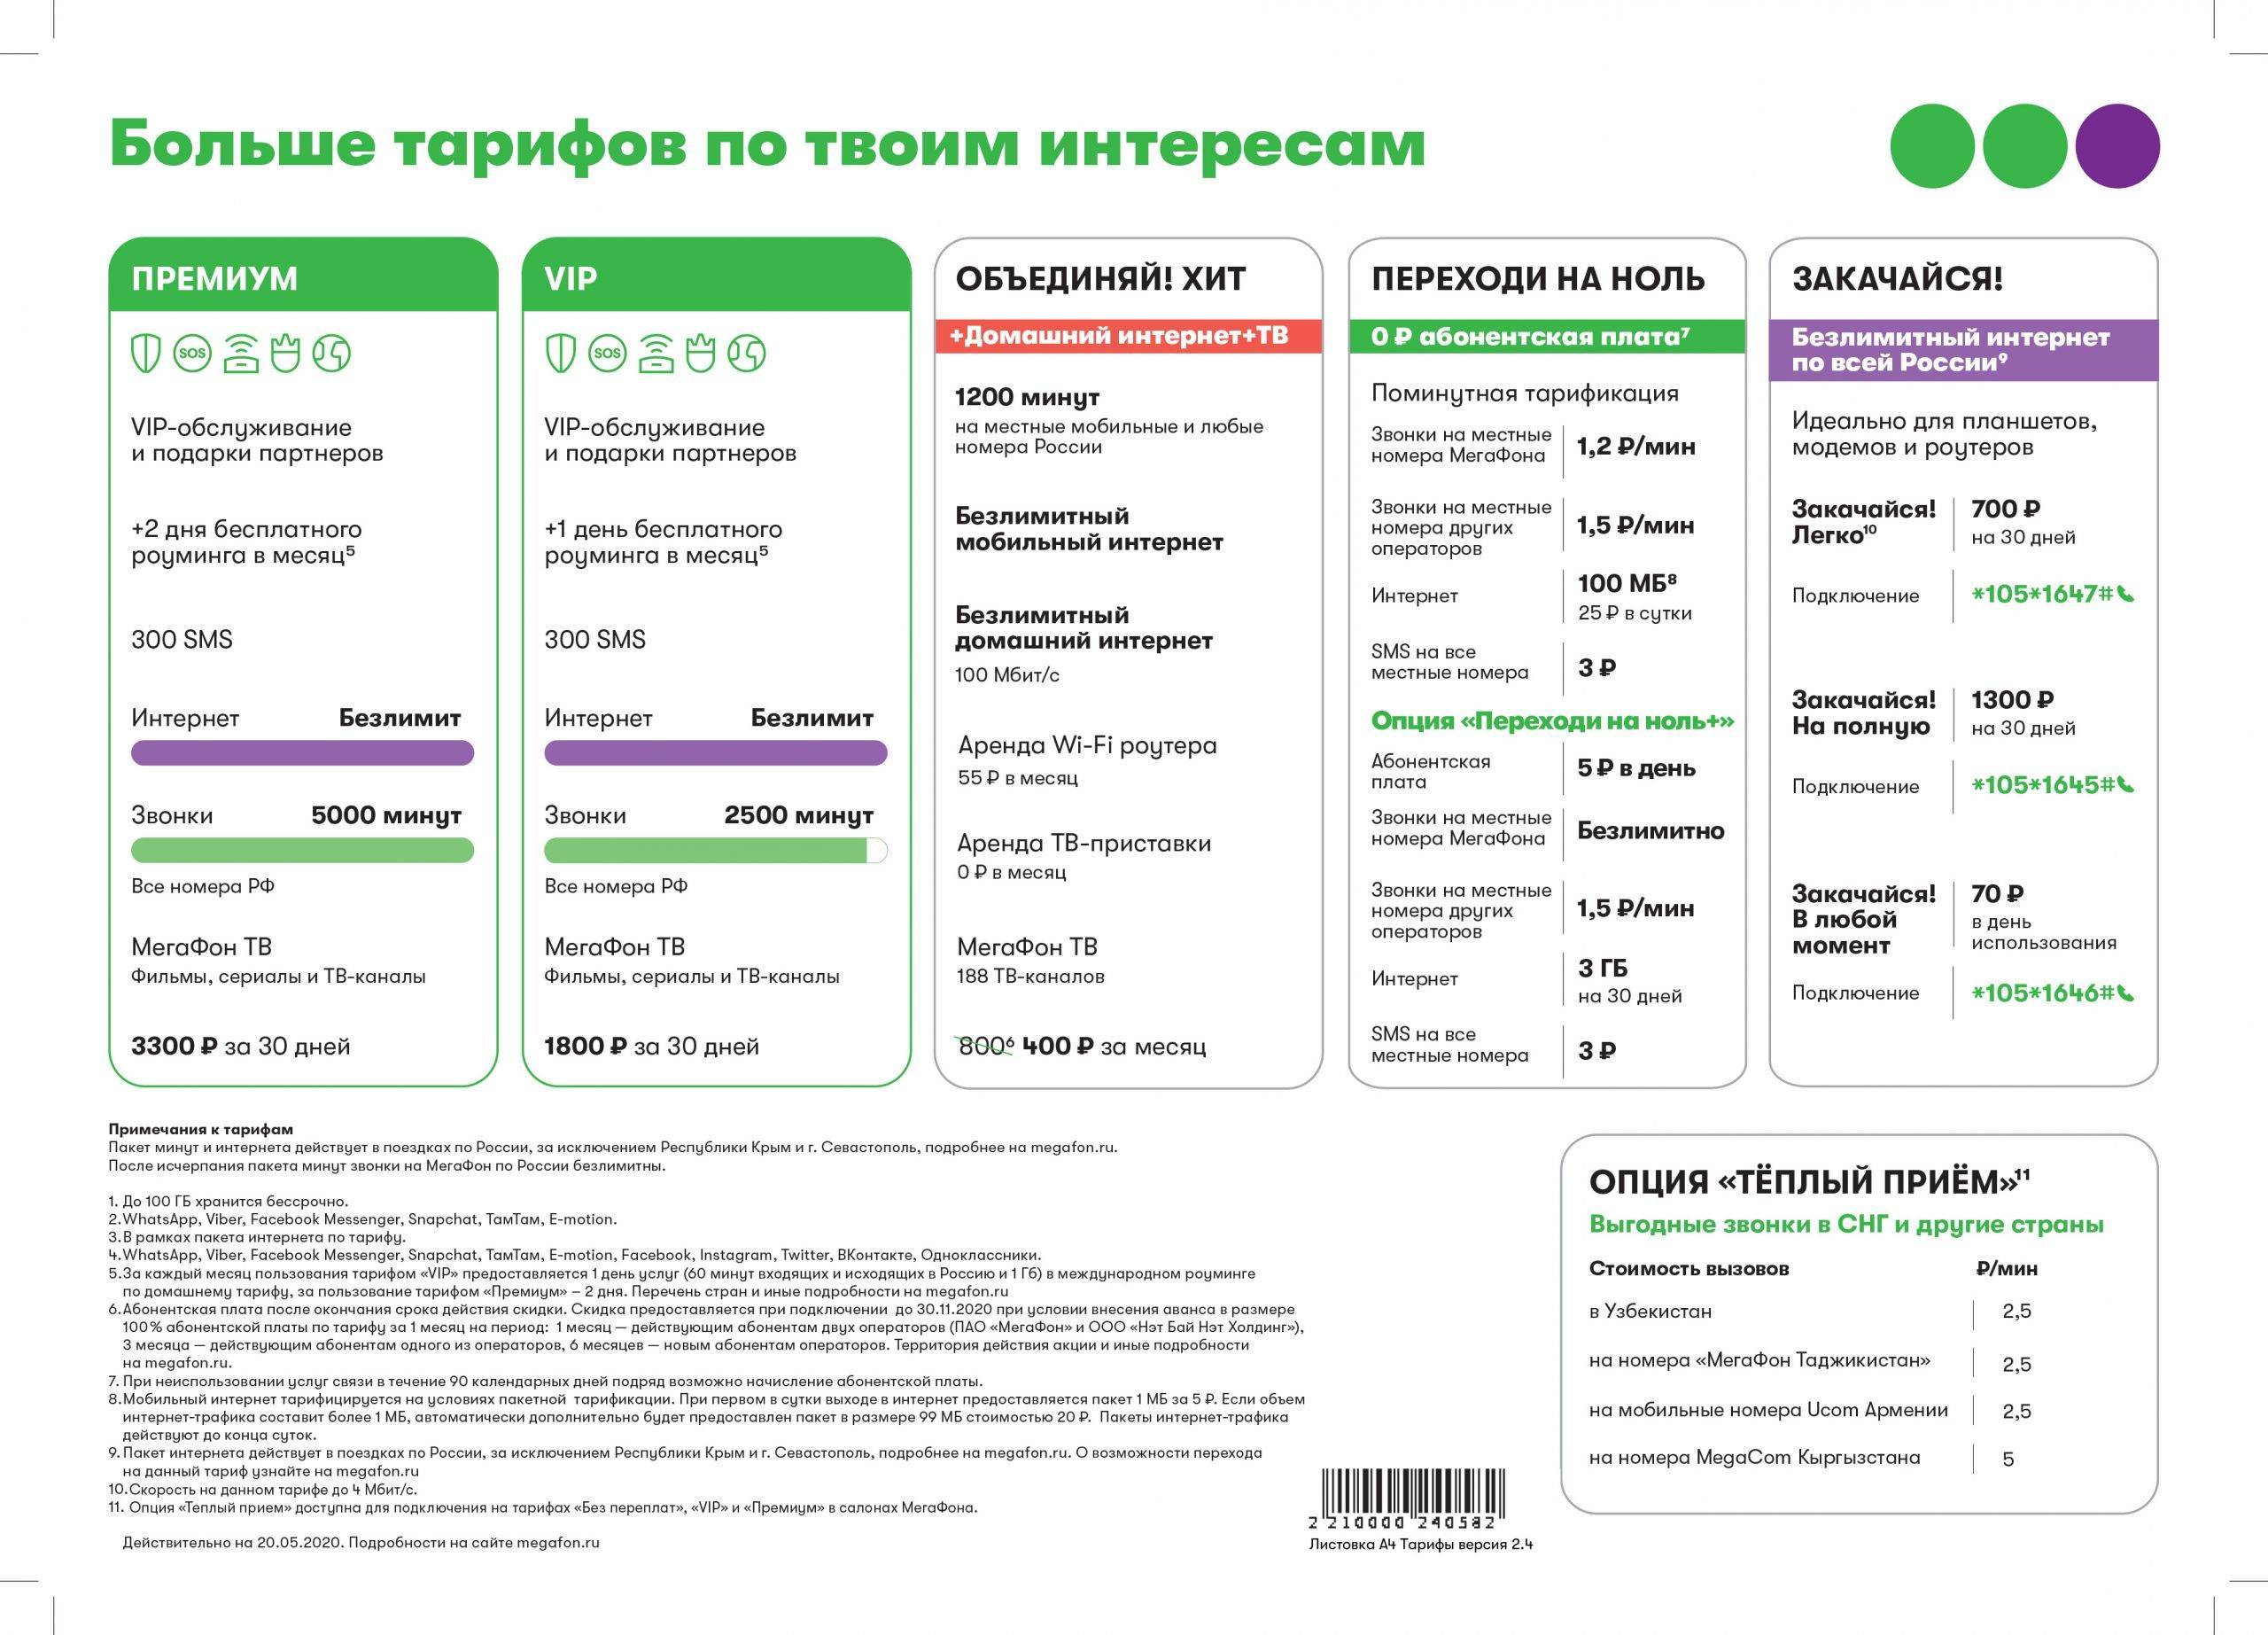 Мегафон в крыму: условия и стоимость звонков, смс и интернета | тарифы мегафон | tarifinform.com